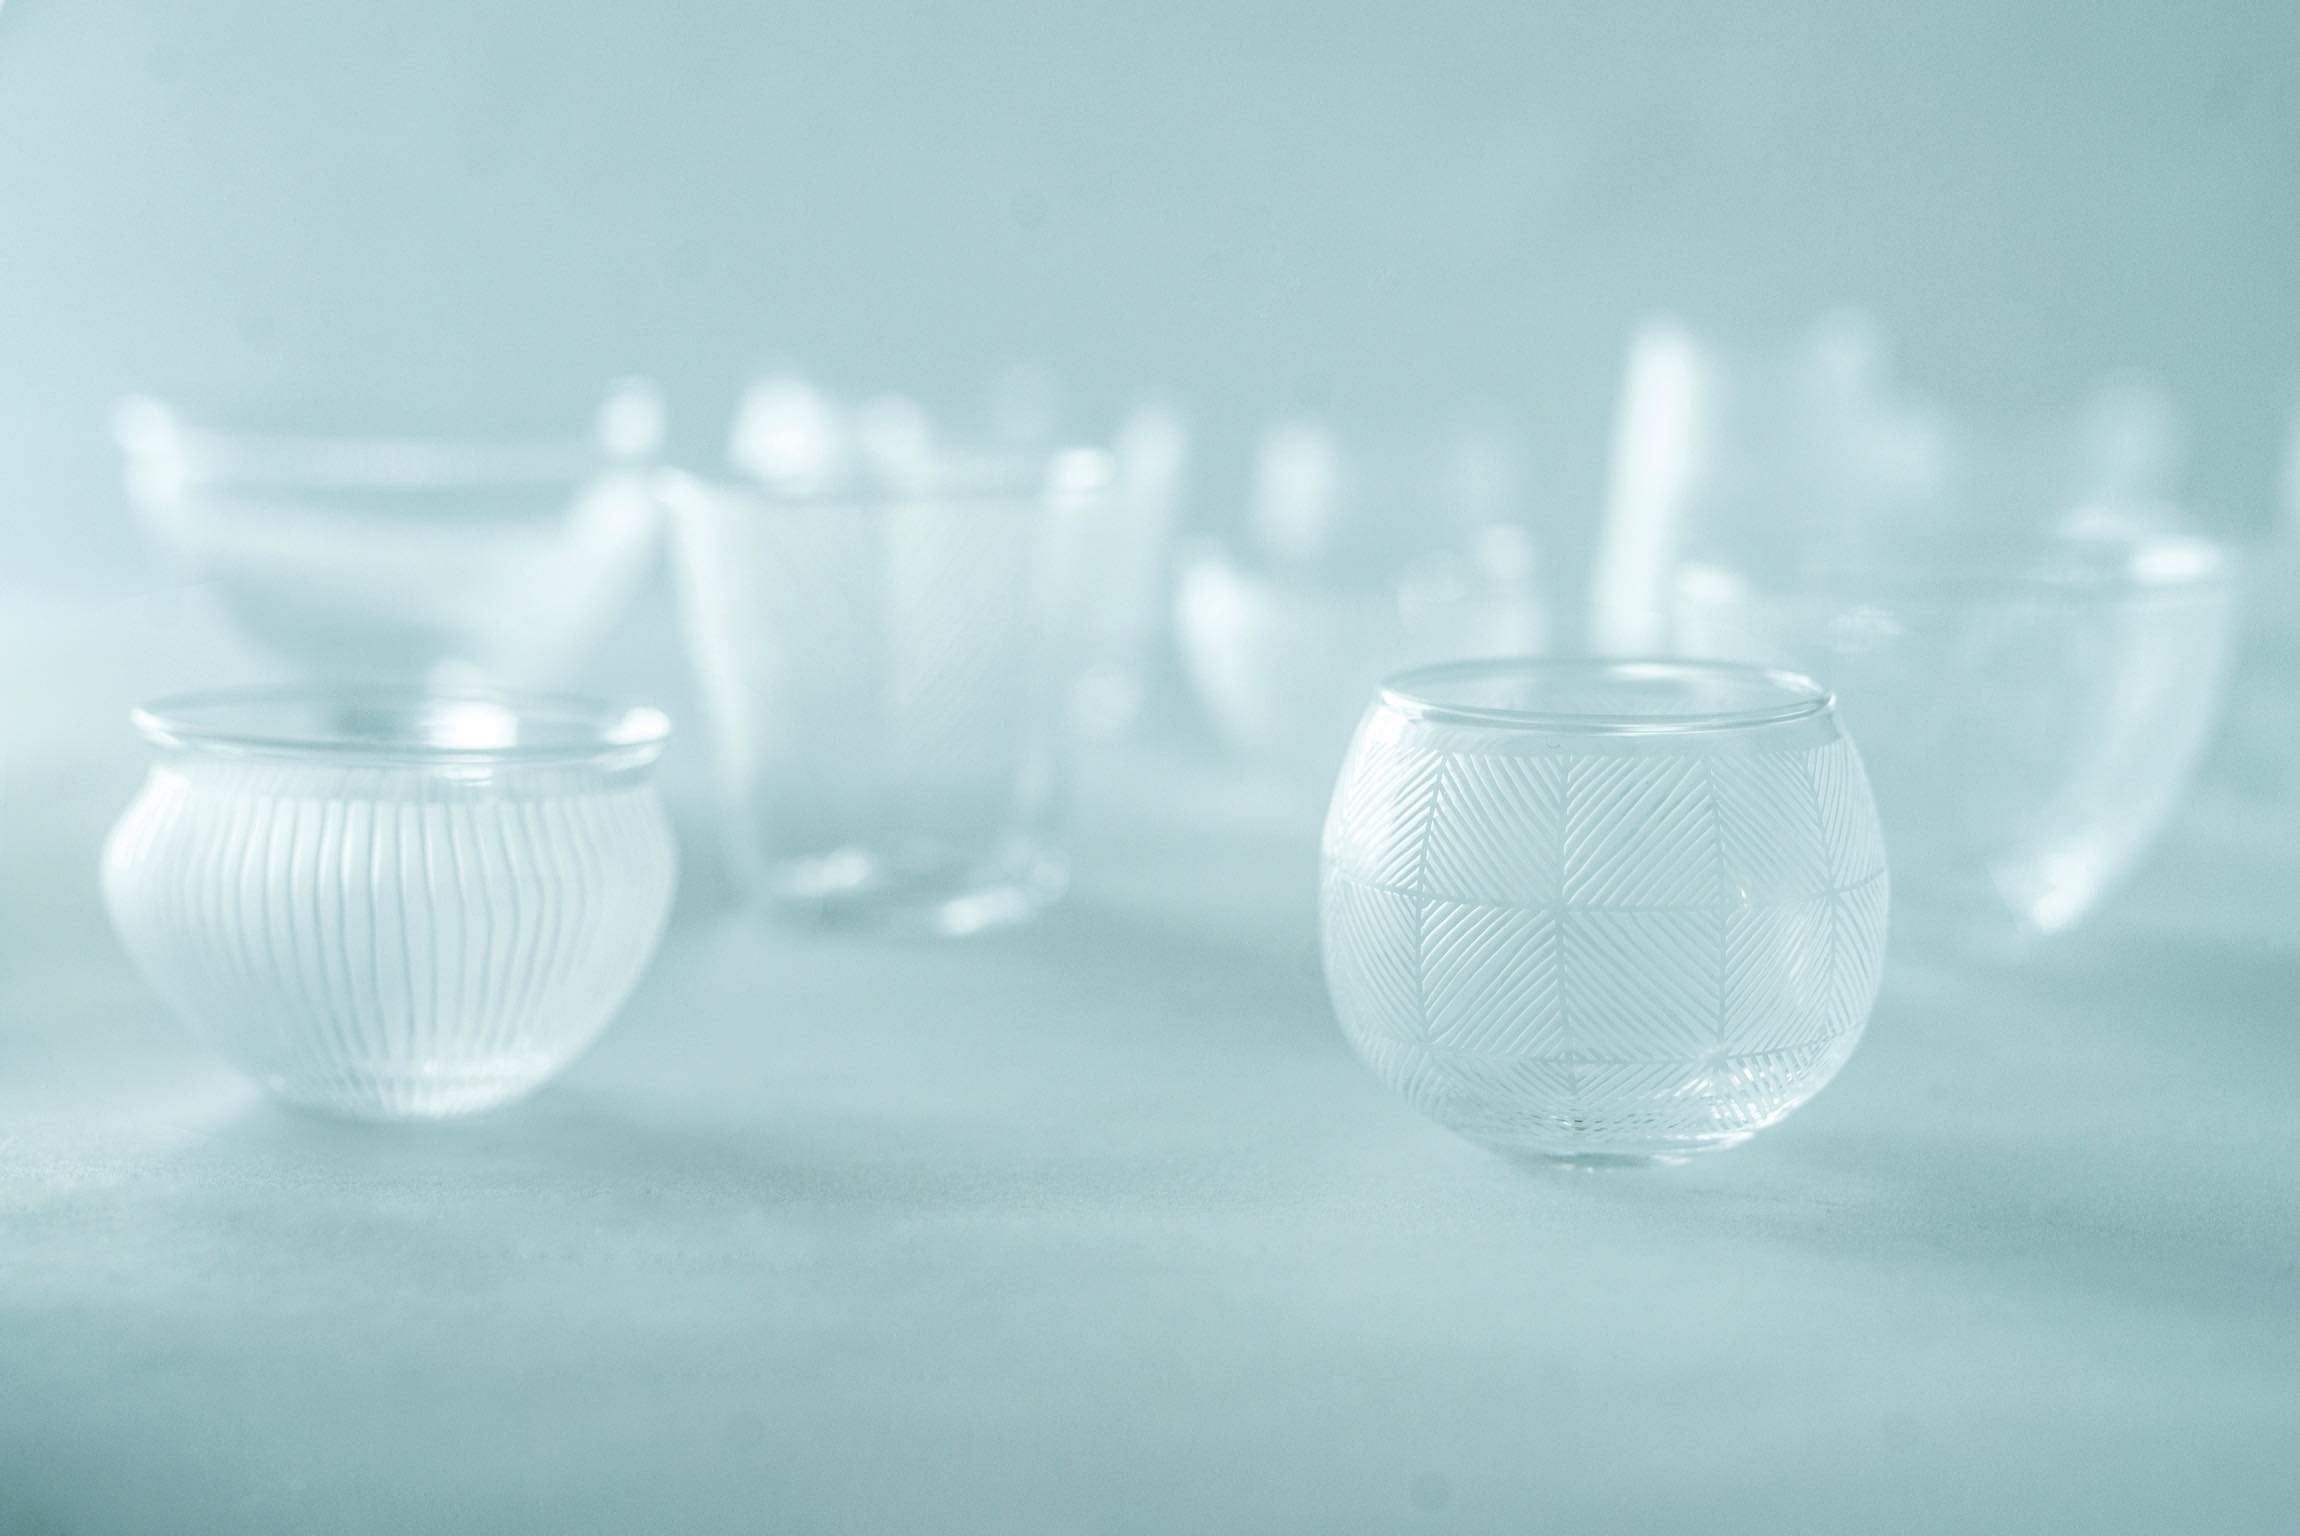 ガラス作家・新田佳子さんによる、薄氷のような白い世界観が魅力です